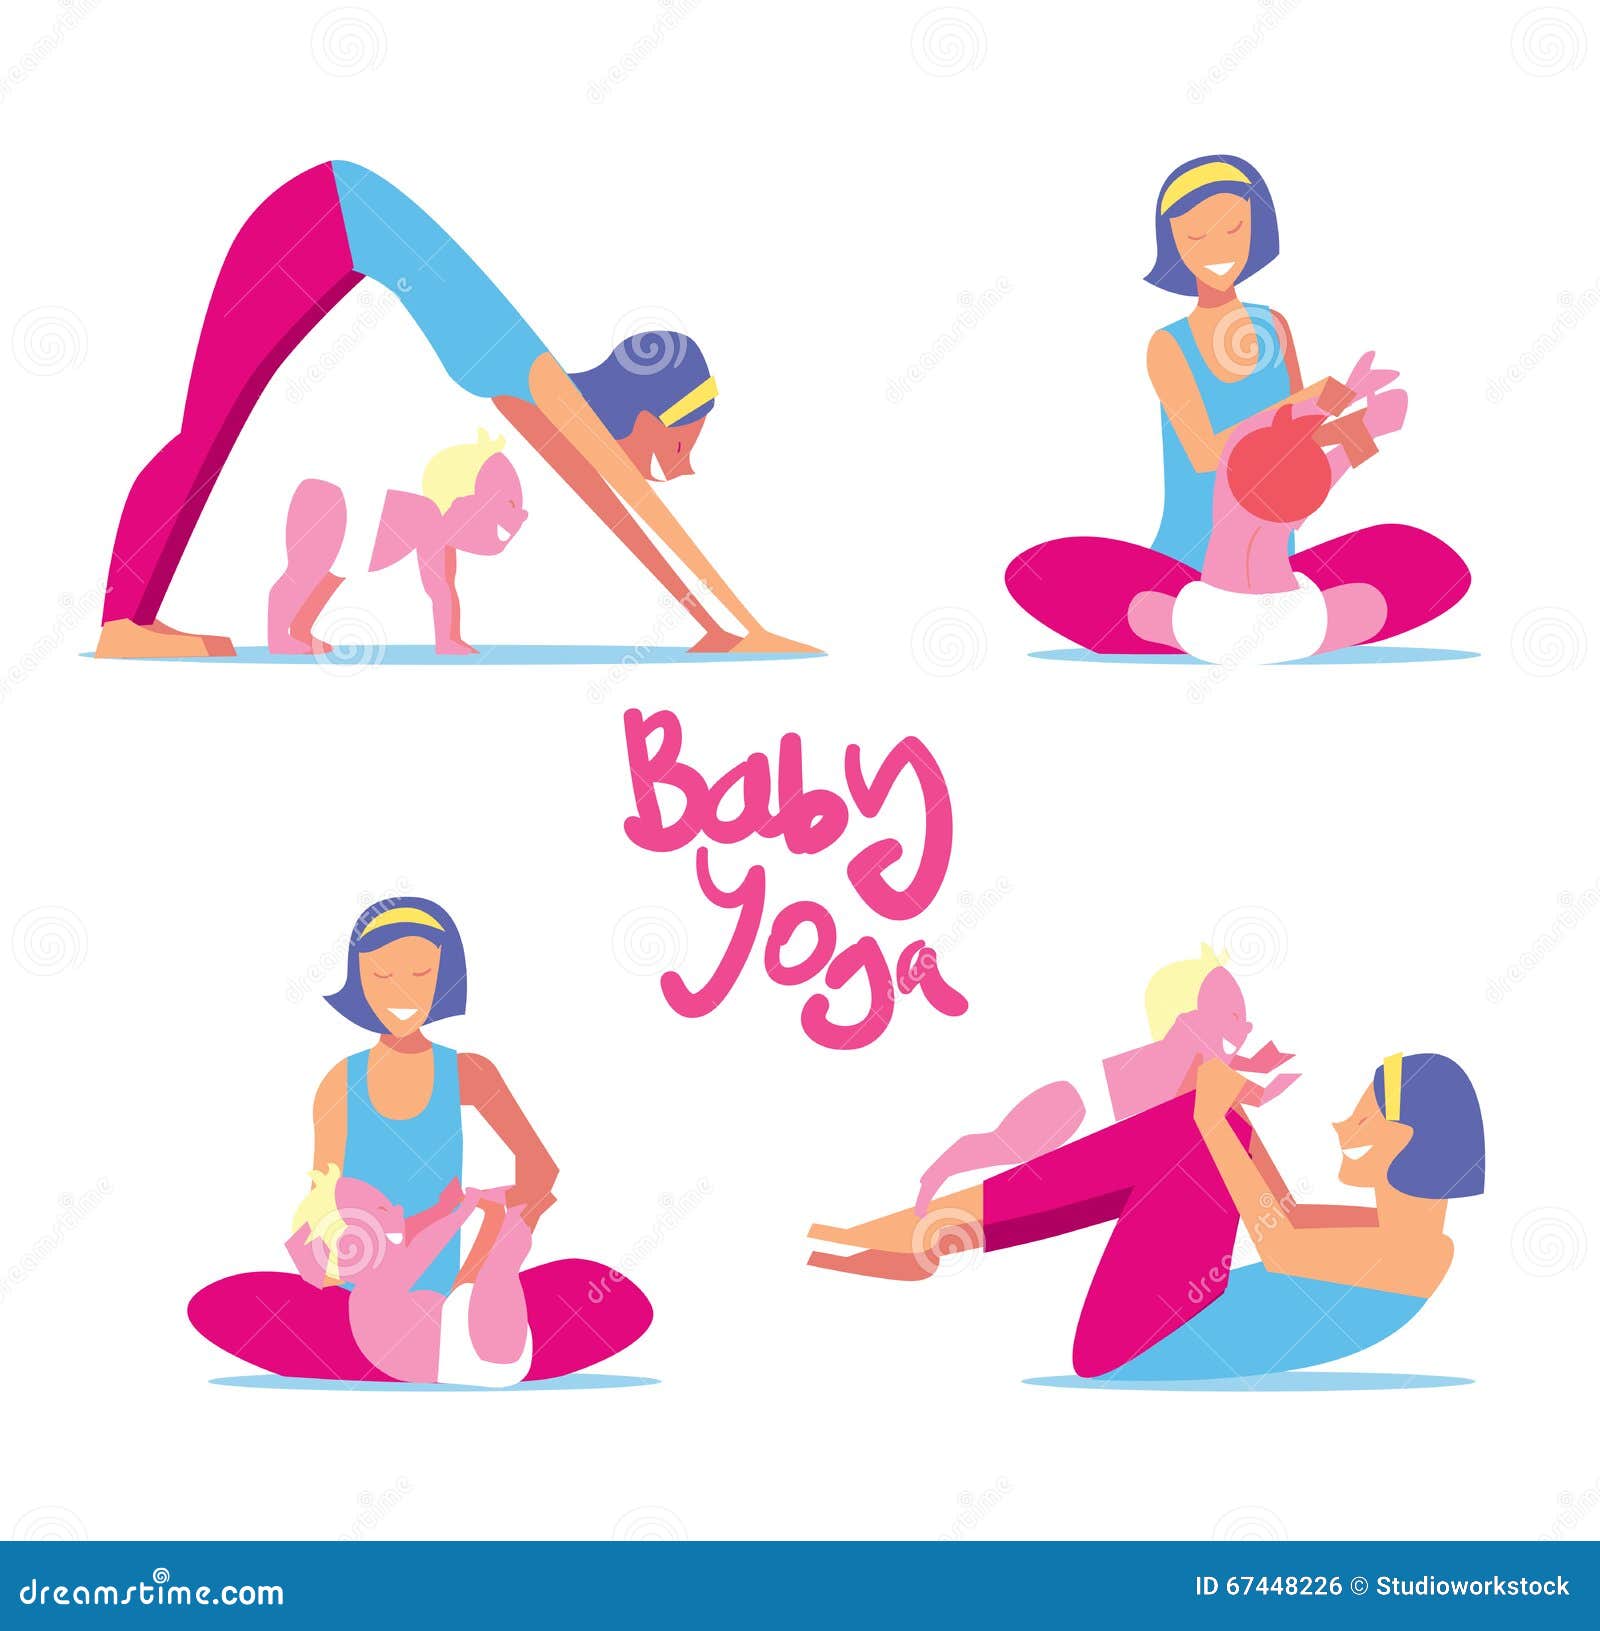 Details more than 137 mom baby yoga poses best - kidsdream.edu.vn